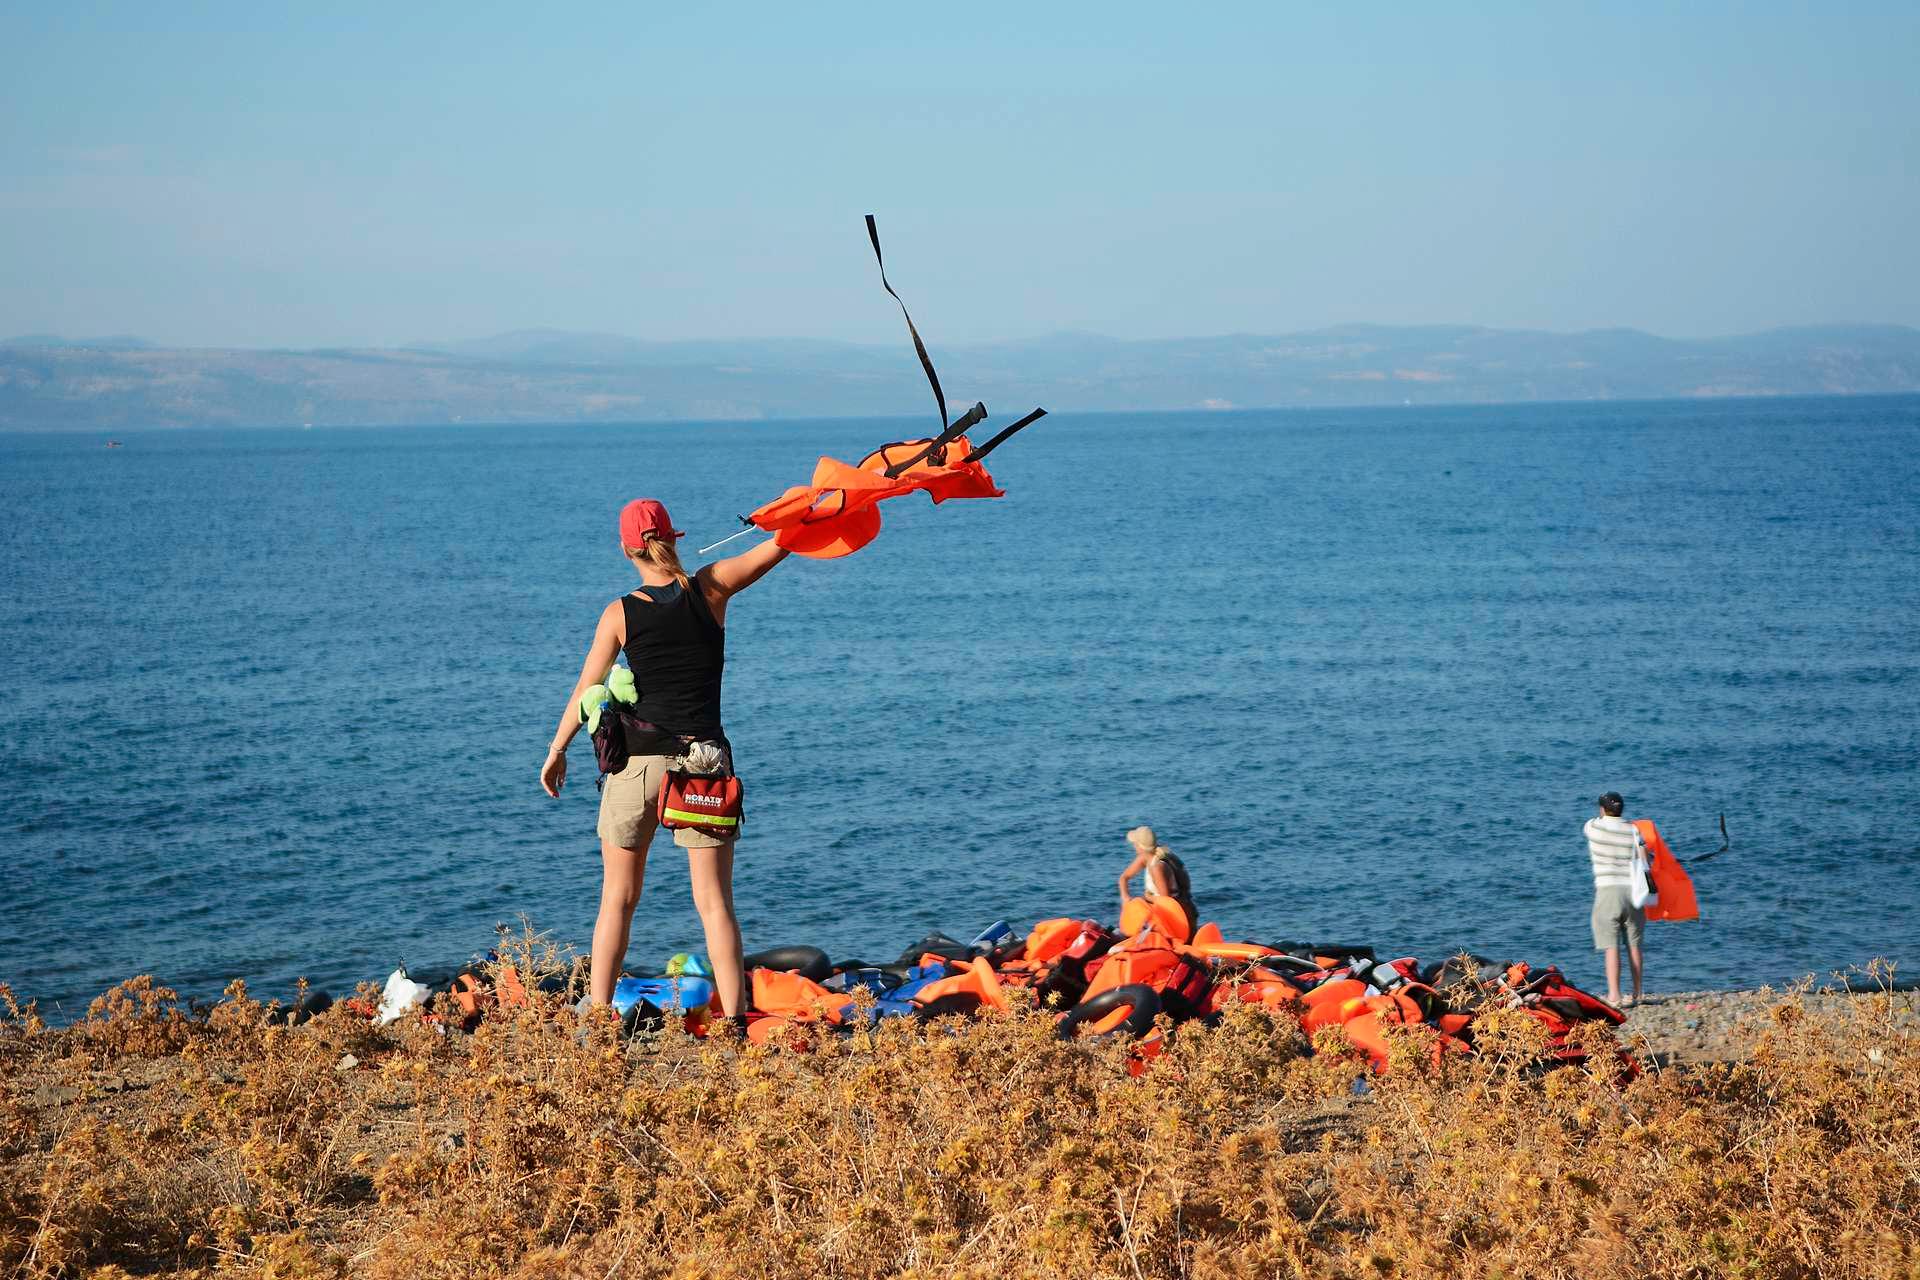 Cecilie Andreassen bruker en av de flere tusen redningsvestene som ligger i hauger langs kysten av Lesbos til å vise flyktningene hvor de bør prøve å styre gummibåten i land. Mange steder er det farlig med skjær i sjøen eller bratte klipper. I bakgrunnen er kysten av Tyrkia.